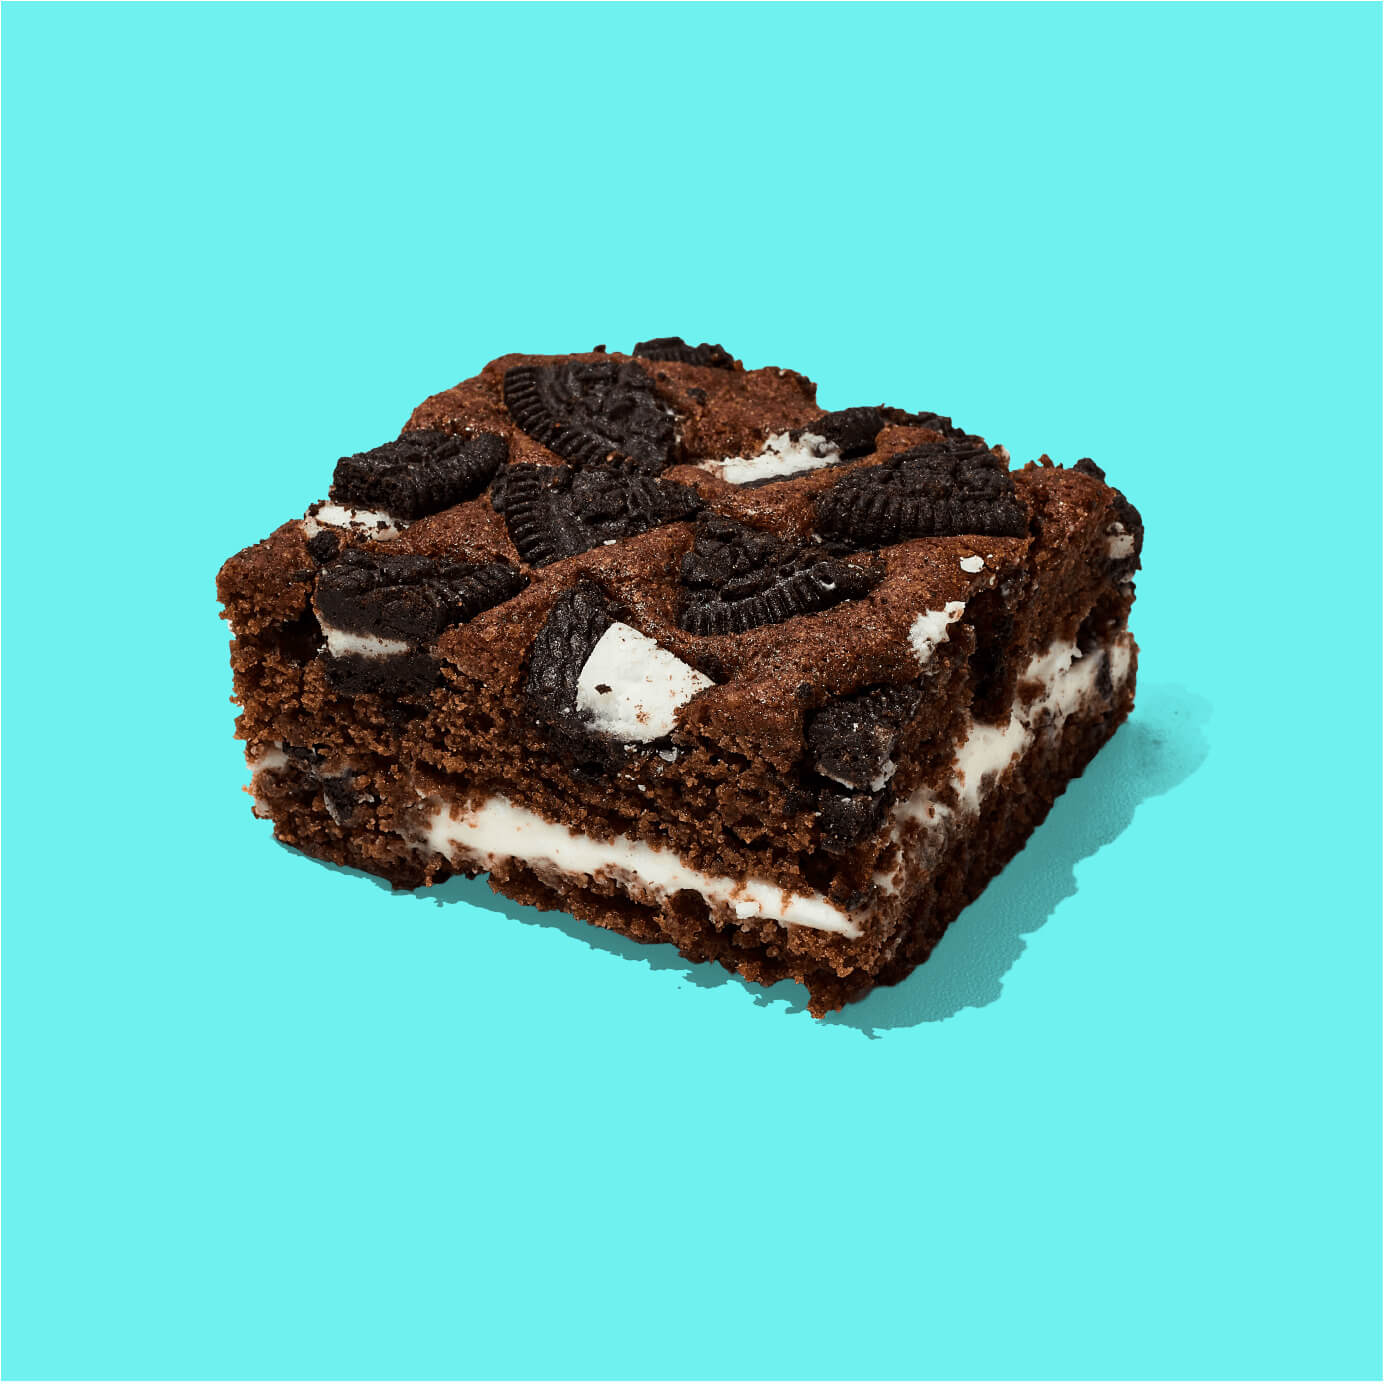 Brownie de chocolate con una deliciosa crema de vainilla y trozos de galleta. Decorados con galletas Oreo.

Medida de Producto: 6.5 cm de ancho, 6.5 cm de largo, 3.5 cm de altura

 
